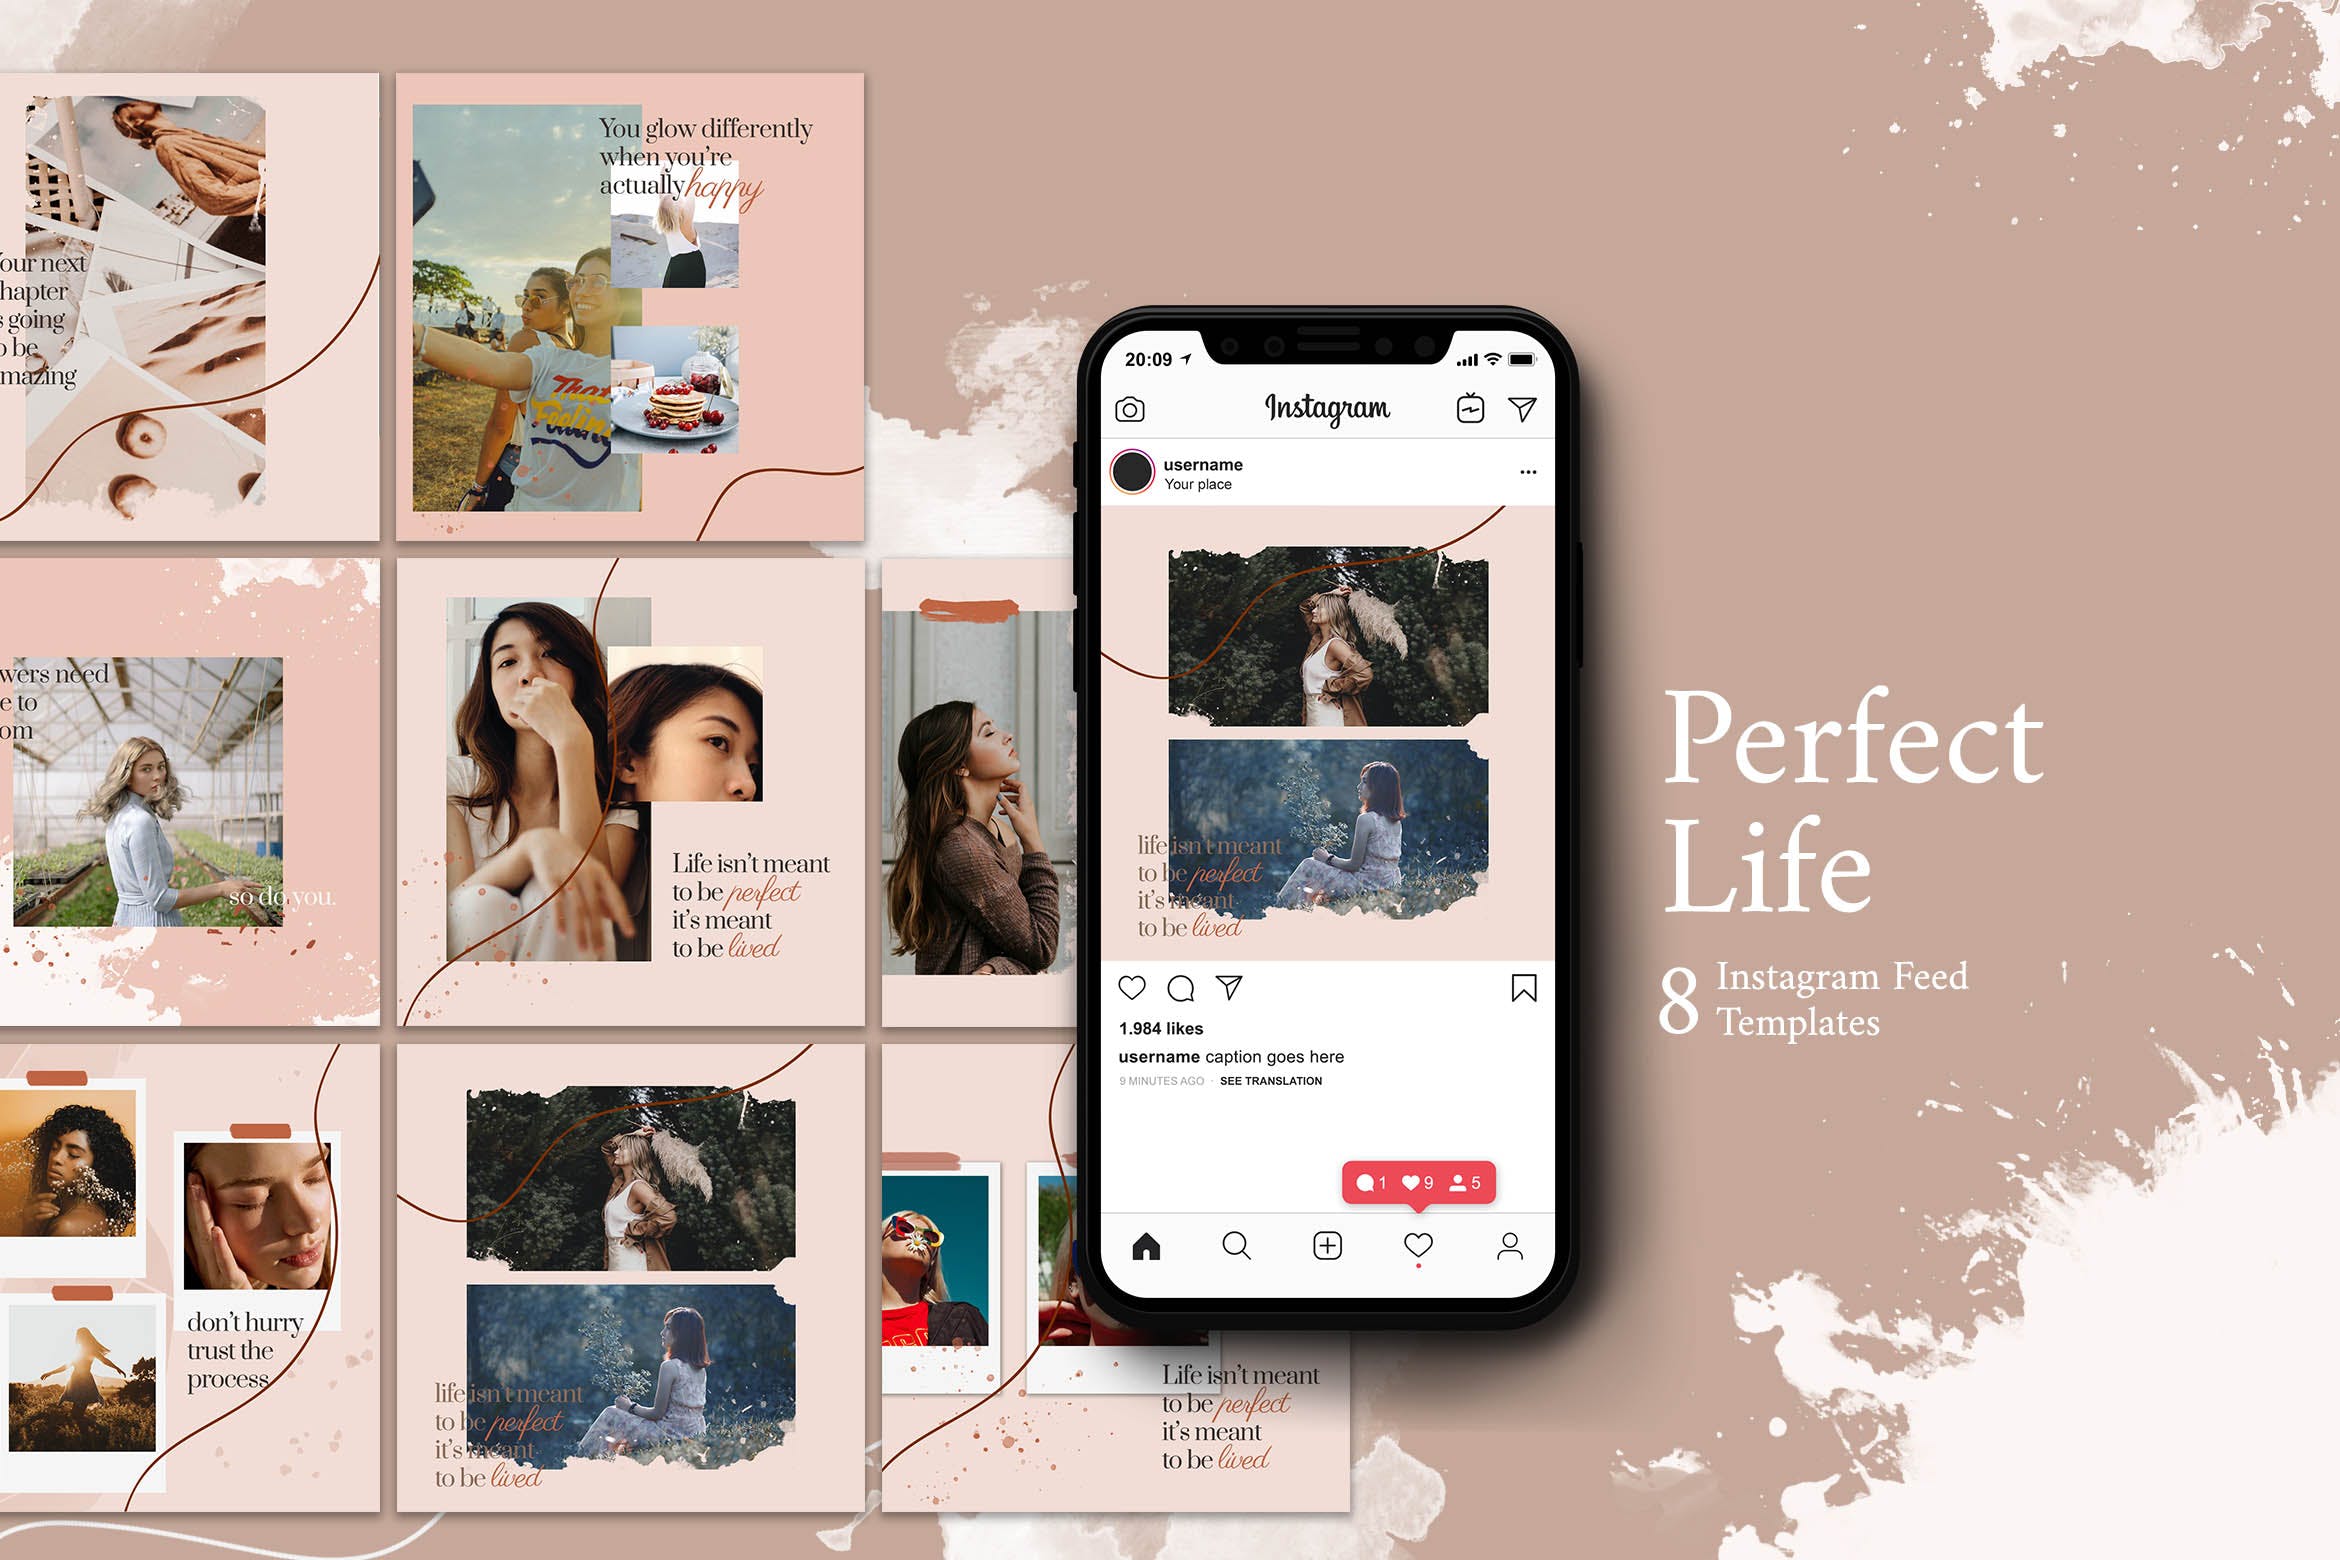 完美生活方式Instagram帖子社交媒体贴图设计模板 Perfect Life – Instagram Post Template设计素材模板